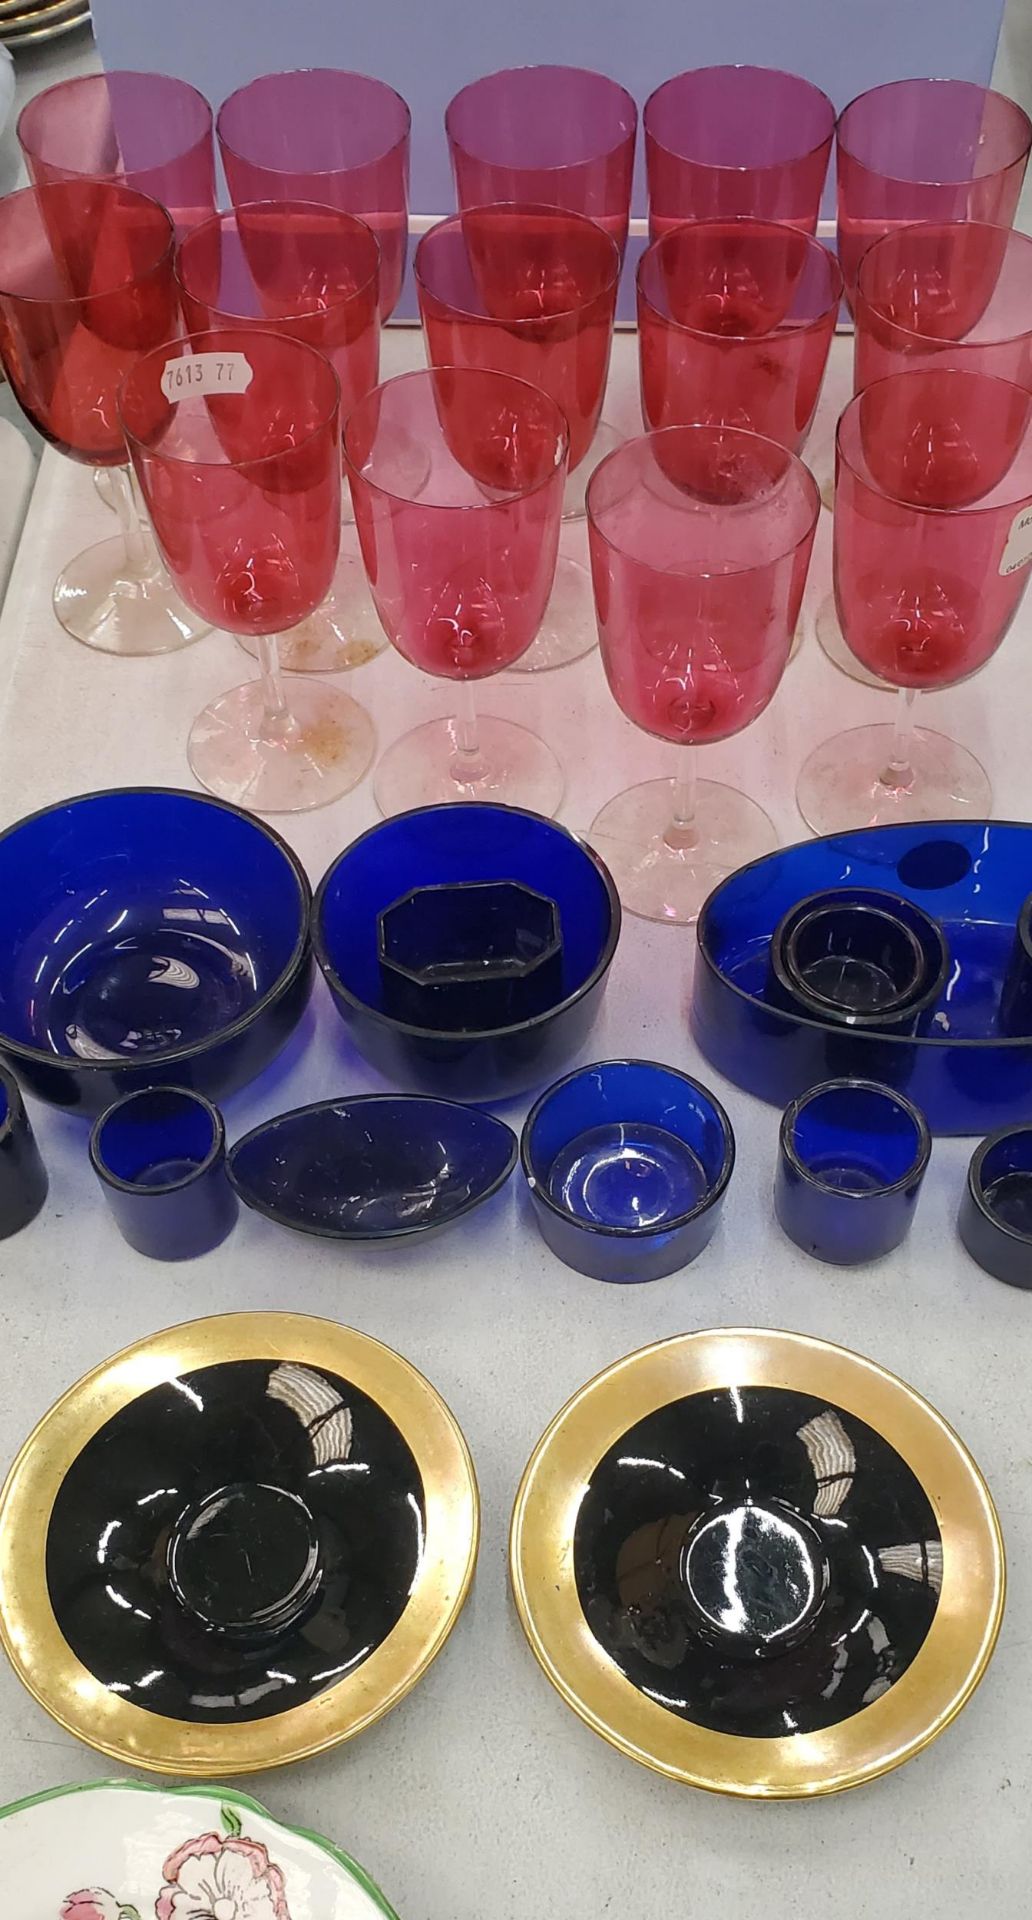 A QUANTITY OF CRANBERRY GLASSES, BLUE GLASS POTS, VINTAGE PLATES, ETC - Image 4 of 4